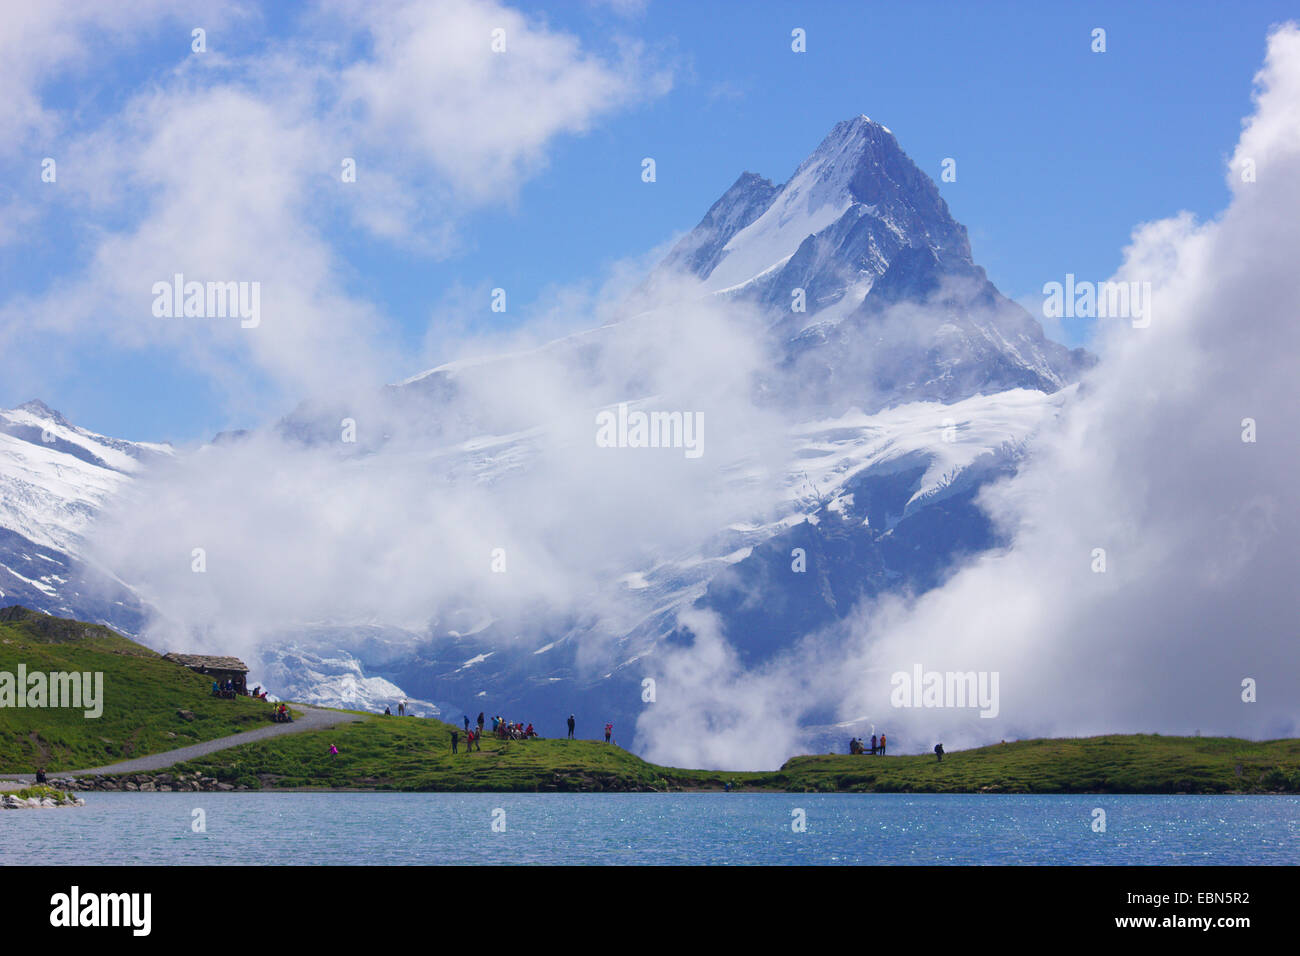 Schreckhorn seen from Lake Bach near Grindelwald, Switzerland Stock Photo